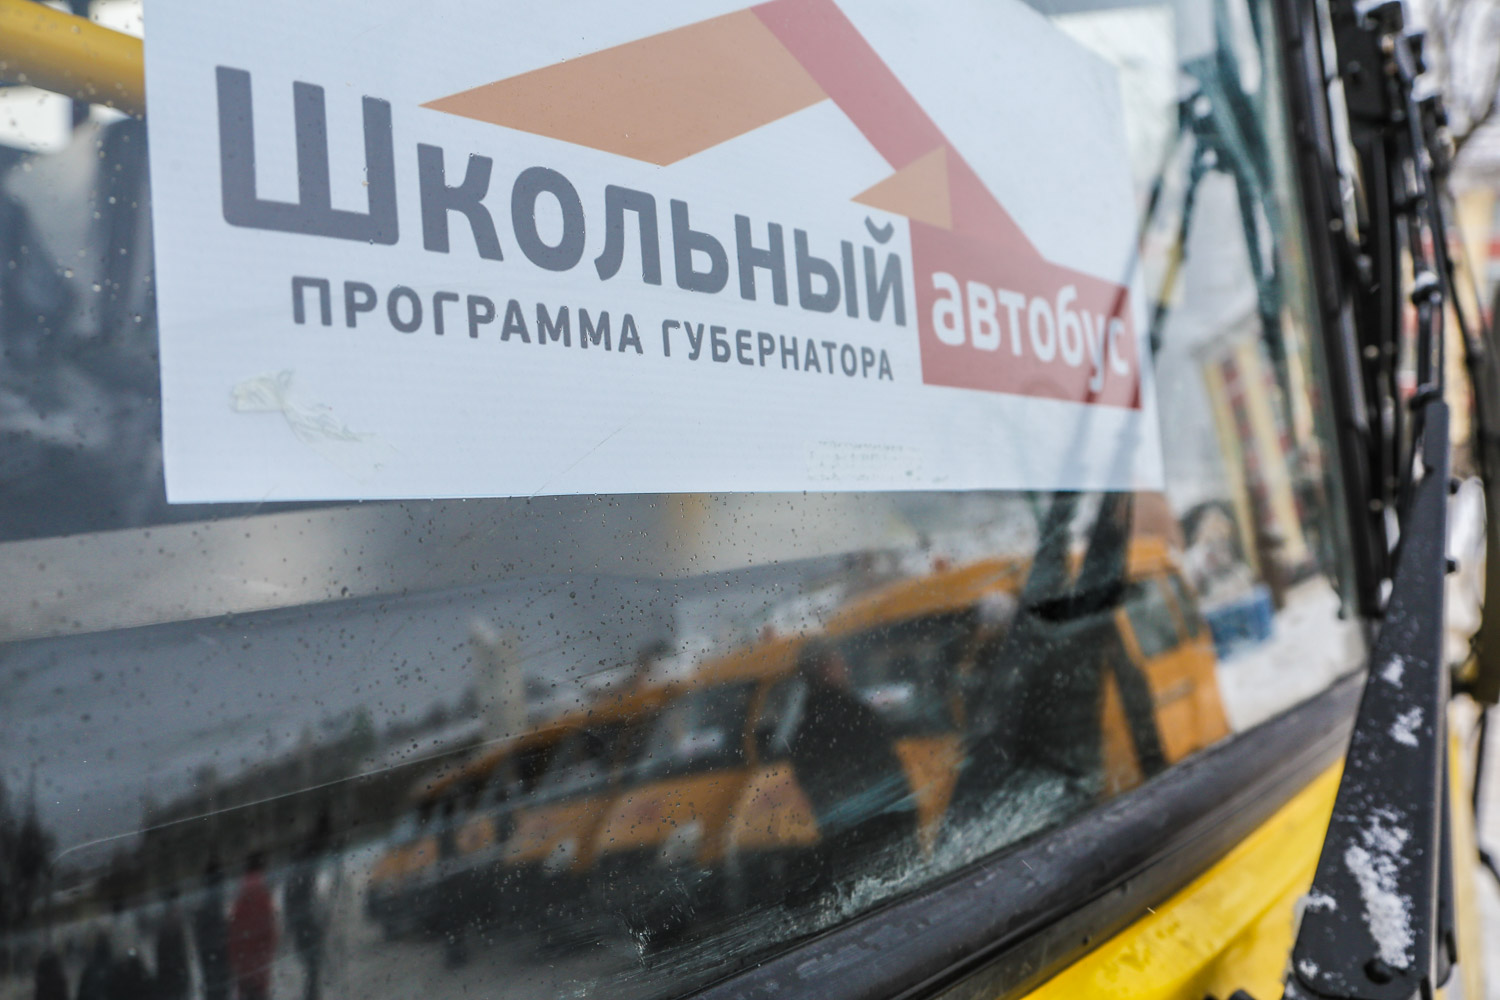 В Череповецком районе детей попросили поблагодарить губернатора за школьные автобусы, купленные на федеральные деньги